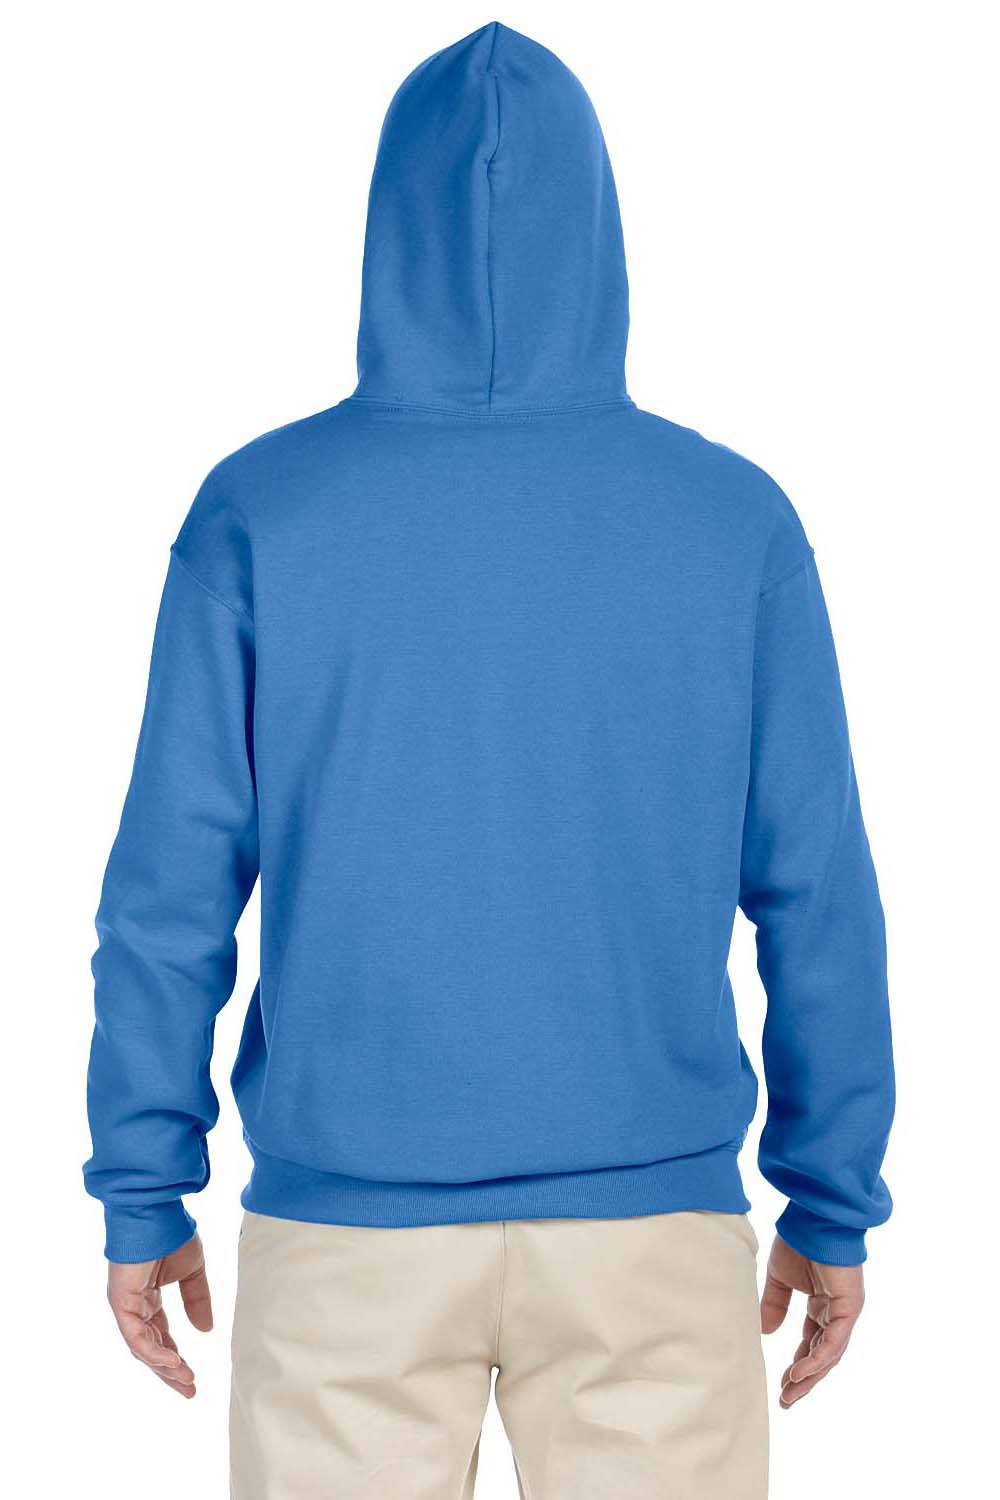 Jerzees 996 Mens NuBlend Fleece Hooded Sweatshirt Hoodie Columbia Blue Back